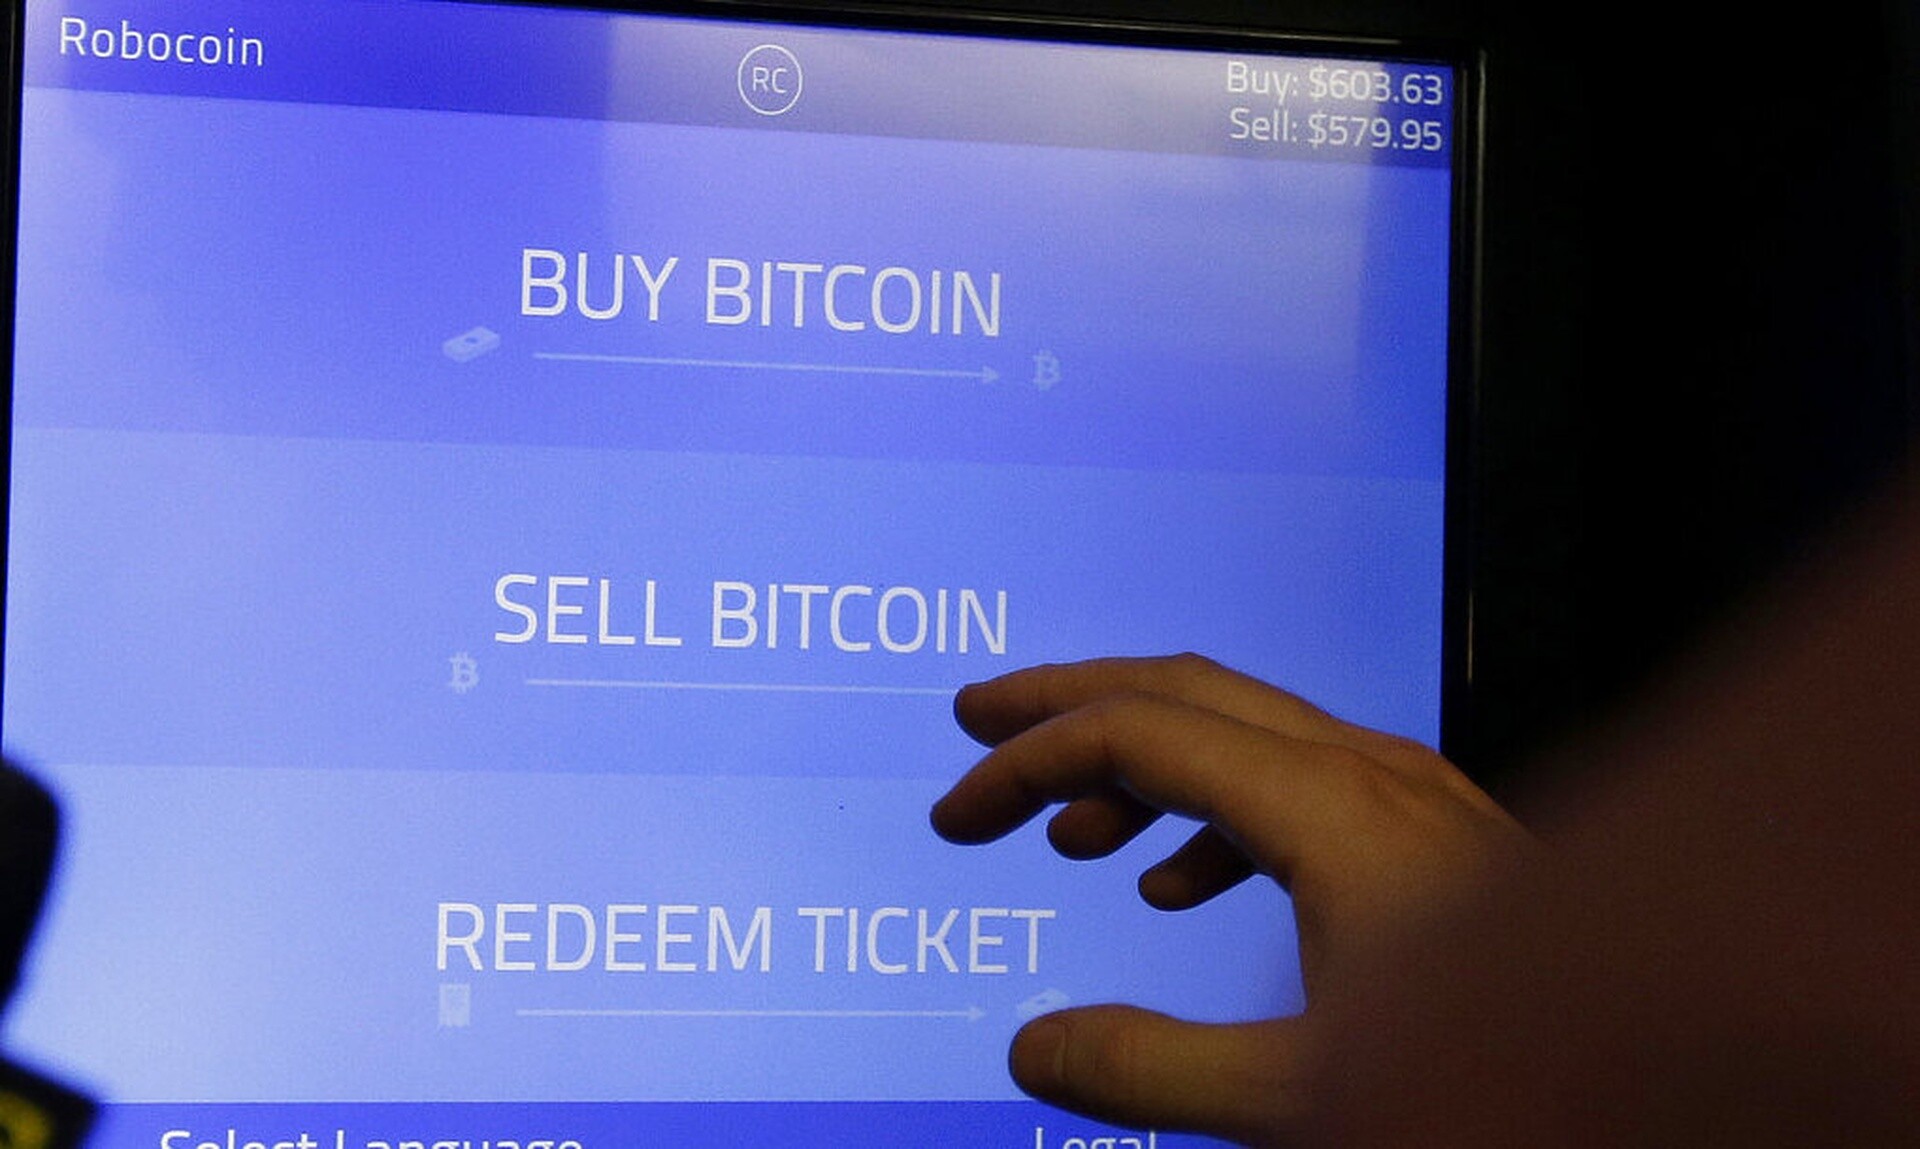 Ούριος άνεμος για το Bitcoin: Ξεπέρασε τις 72.000 λόγω «halving» - Θα τριπλασιαστεί η αγορά crypto